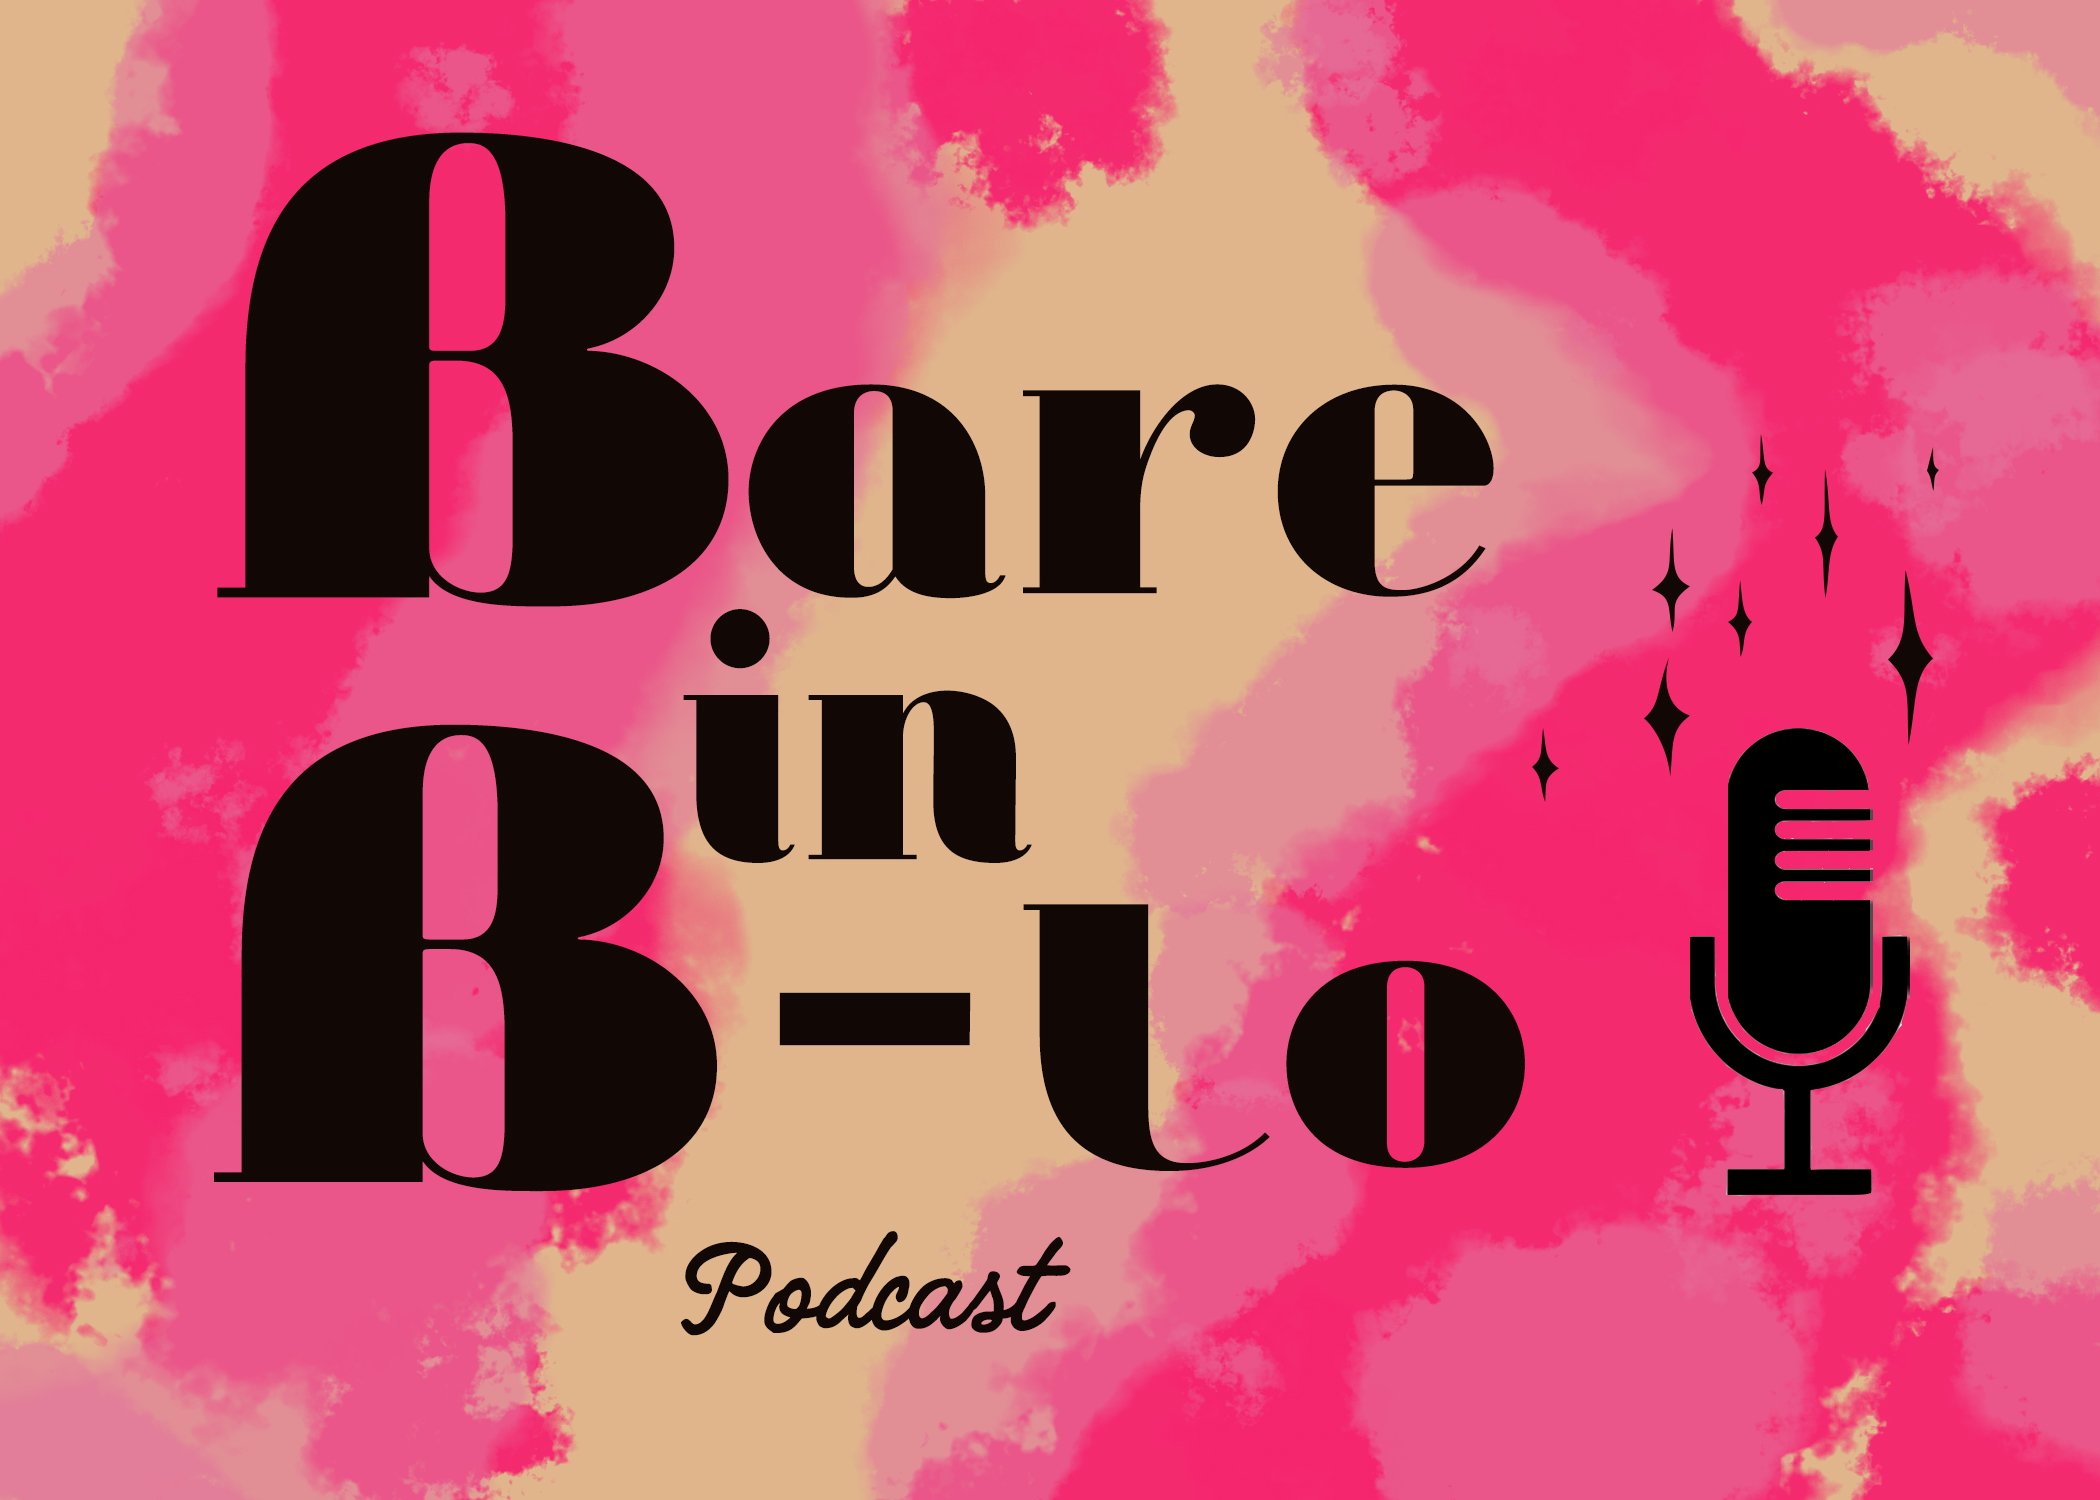 Latest Episodes — Bare in B-Lo